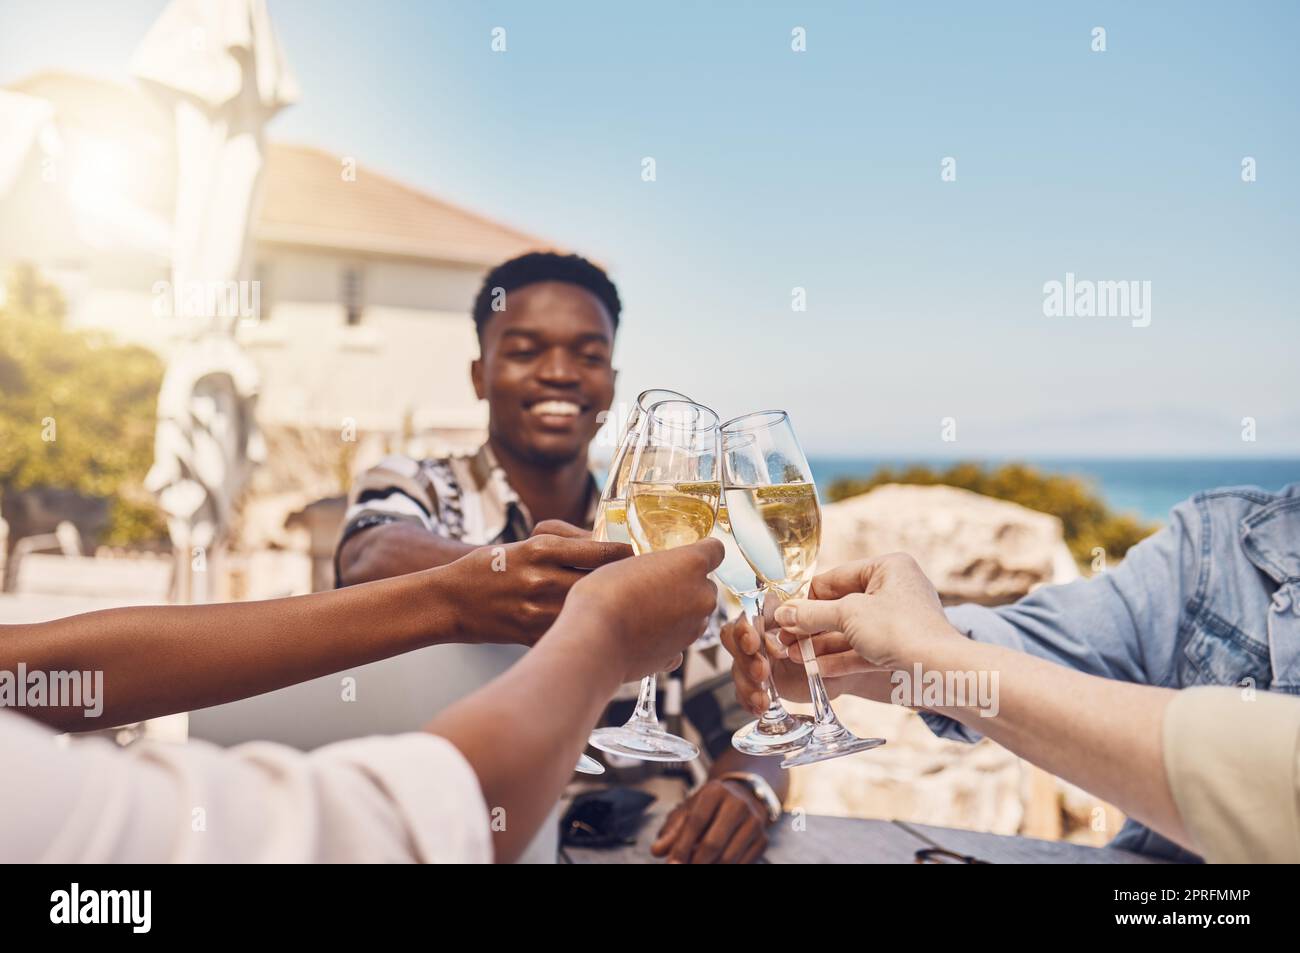 Festeggiamenti, alcolici e brindisi con gli amici con vino in un ristorante all'aperto, felice e divertente. Giovani diversi che si riuniscono per celebrare la libertà, il compleanno, l'amicizia o buone notizie con gli applausi Foto Stock